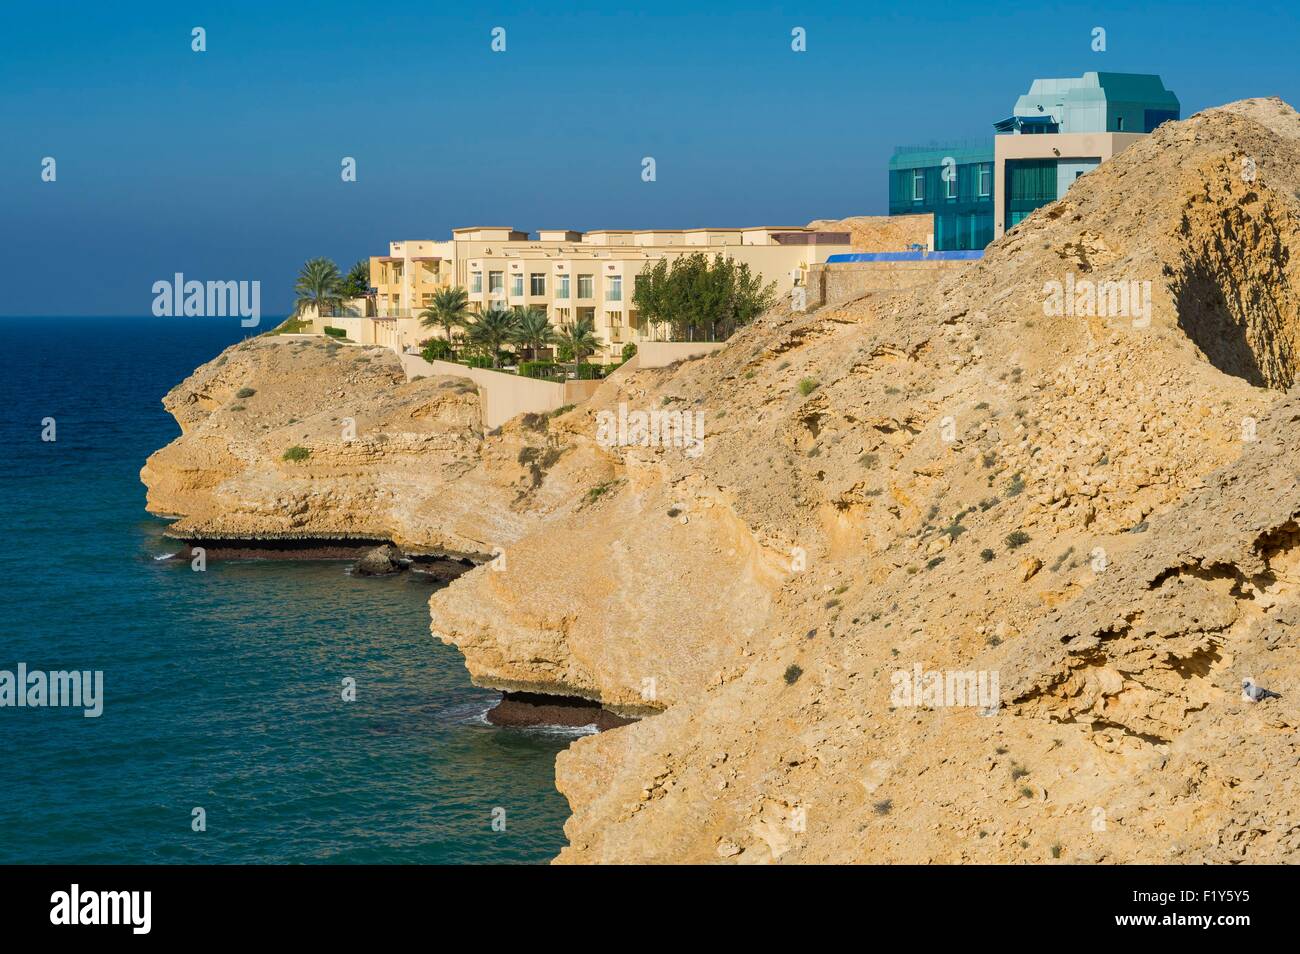 Oman, Muscat, Qantab Barr al Jissah, Resort, Shangri La hotel Banque D'Images